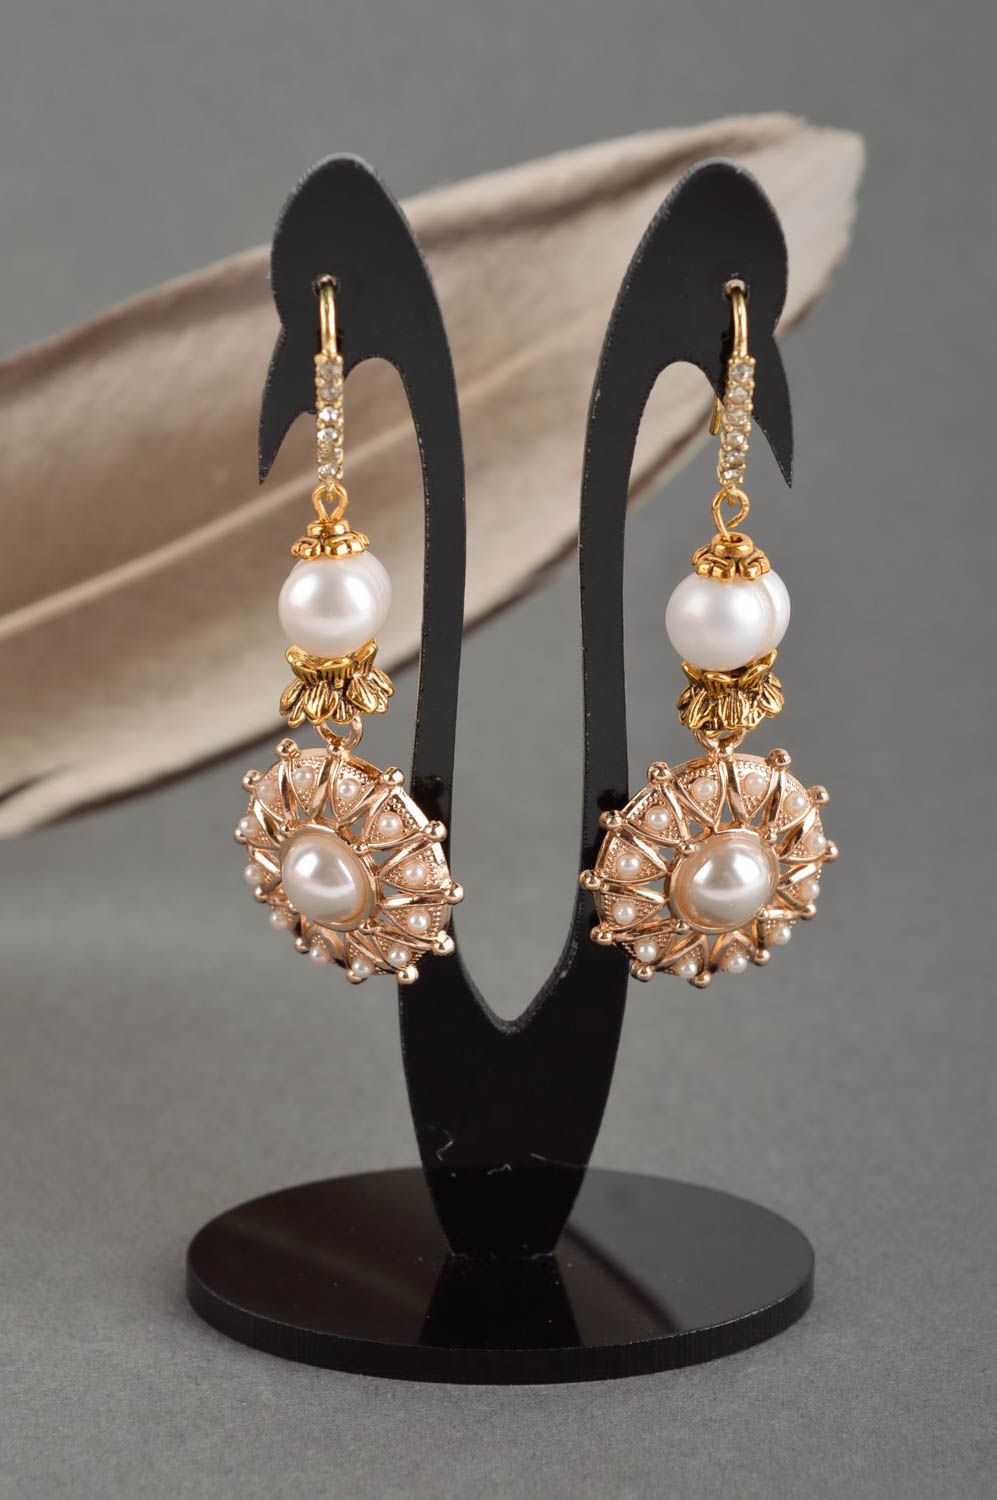 Handmade earrings pearl jewelry dangling earrings fashion accessories for women photo 1